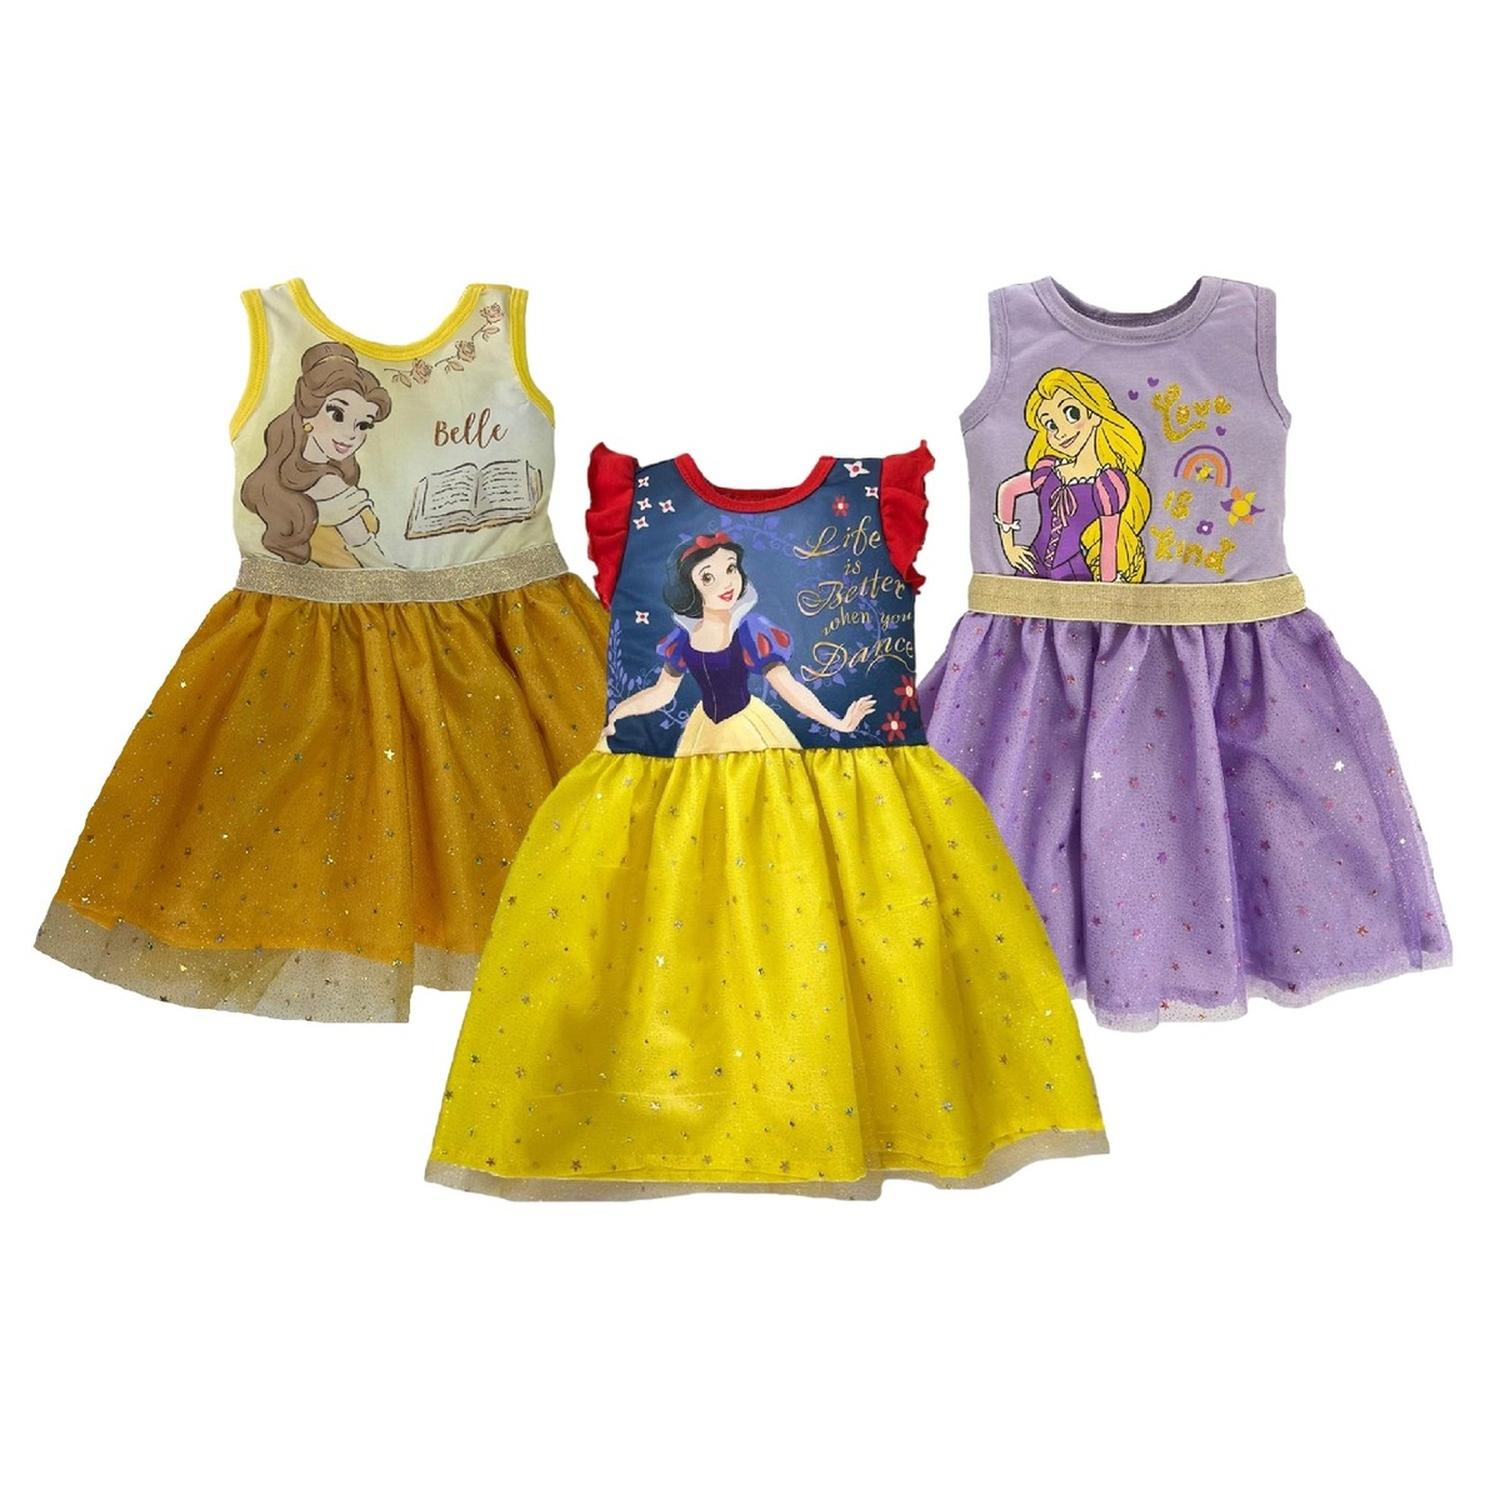 Kit 3 Vestidos Disney Bella, Blanca Nieves, Rapunzel Multicolor